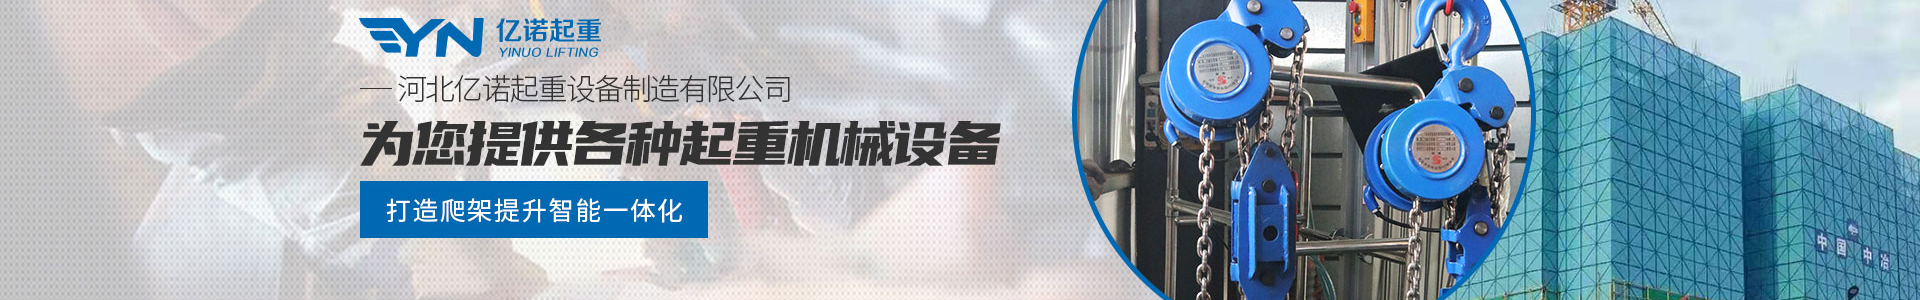 群吊电动葫芦_产品展示_亿诺起重有限公司